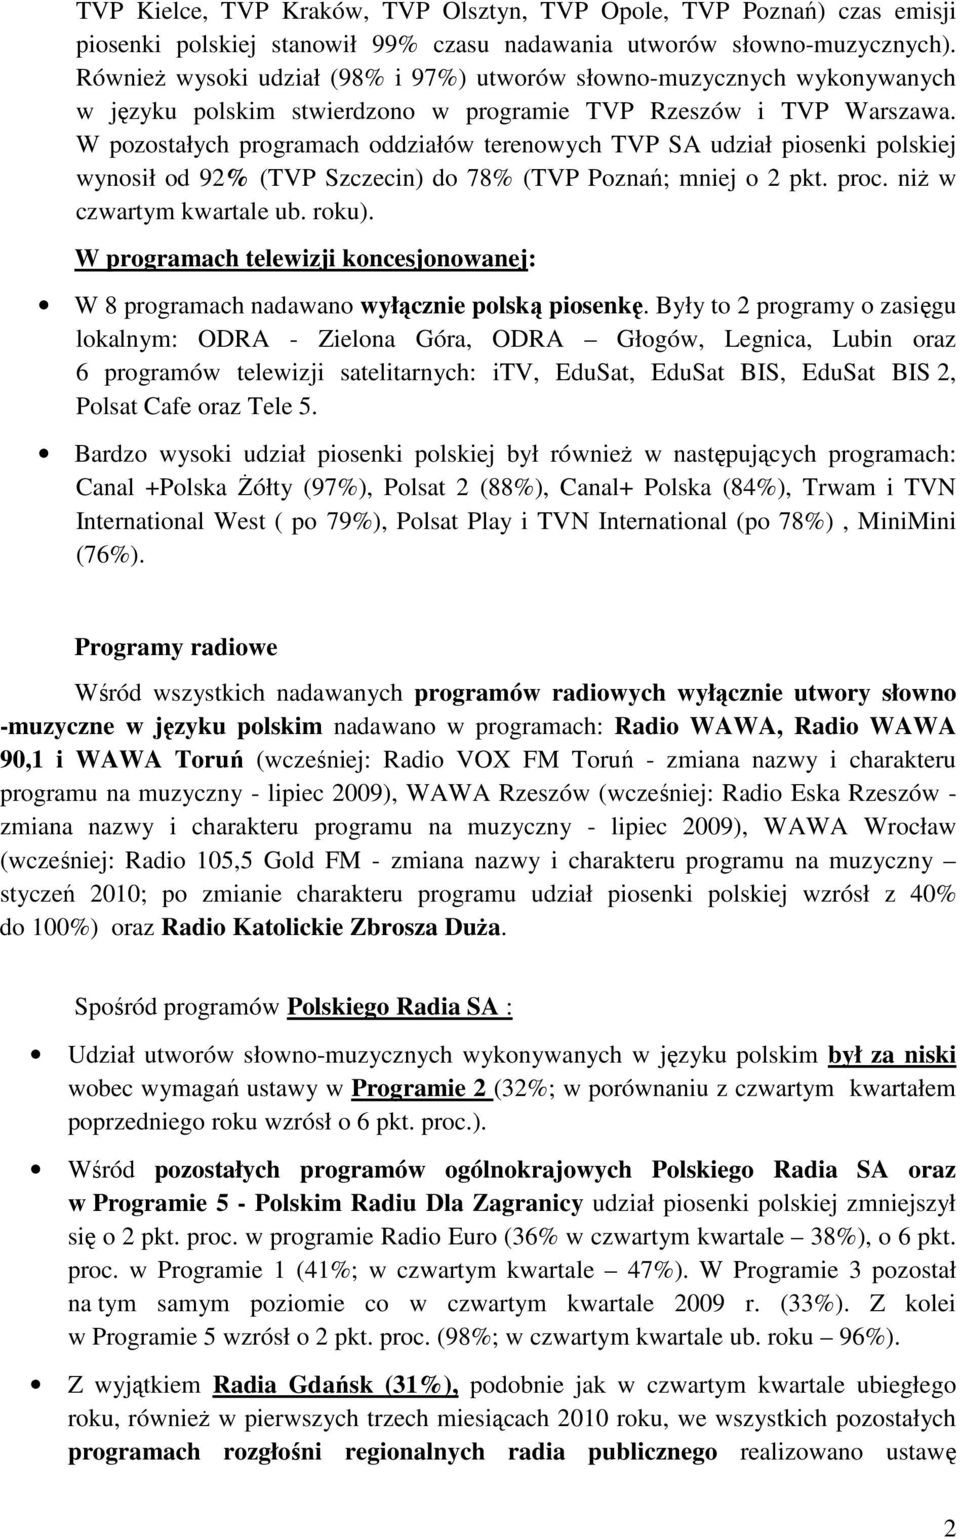 W pozostałych programach oddziałów terenowych TVP SA udział piosenki polskiej wynosił od 92% (TVP Szczecin) do 78% (TVP Poznań; mniej o 2 pkt. proc. niŝ w czwartym kwartale ub. roku).